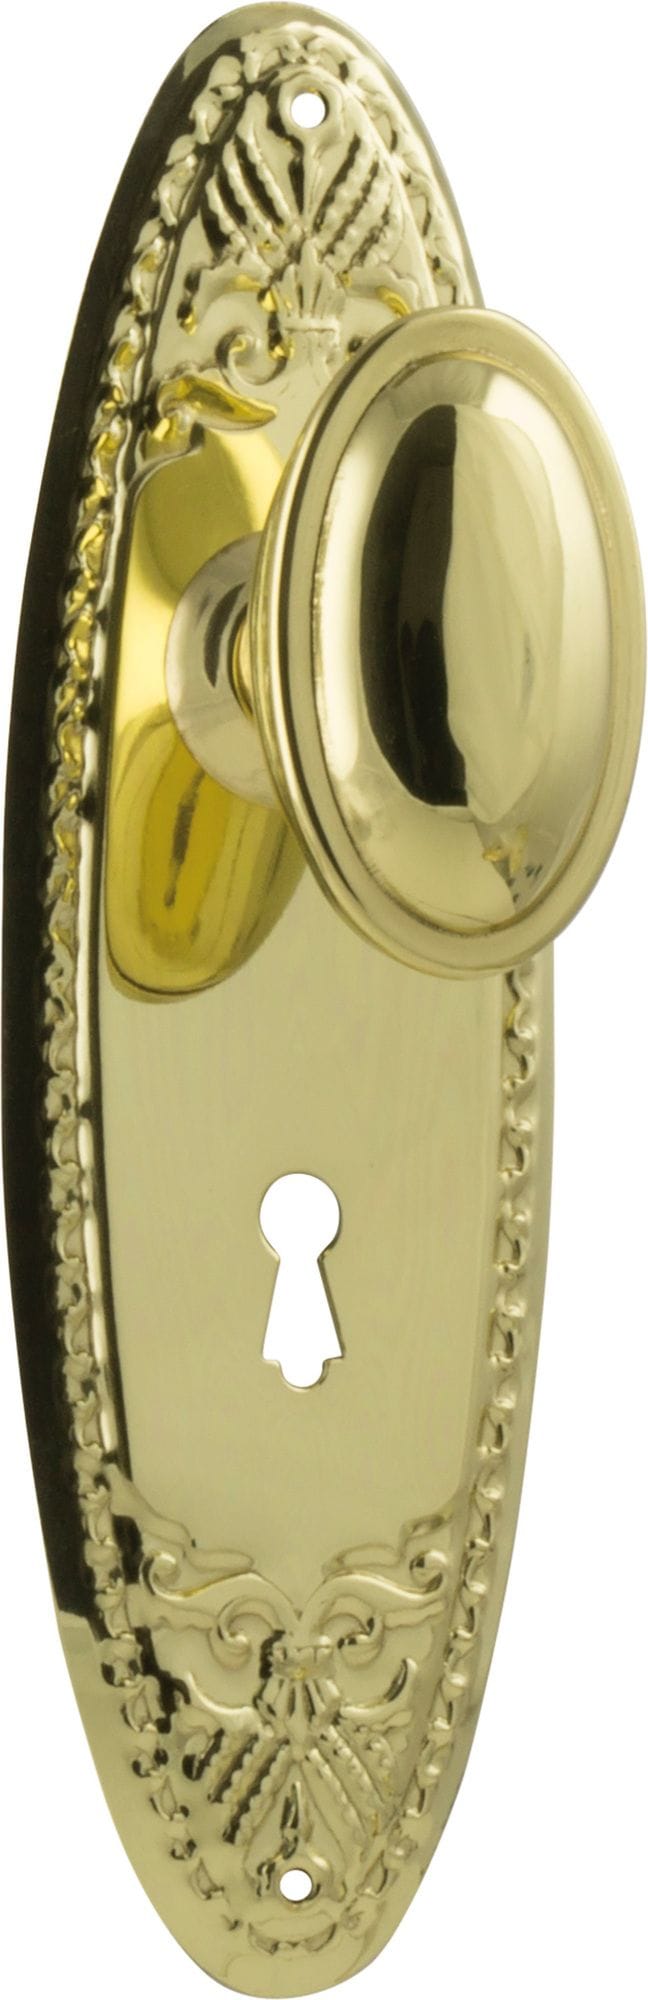 Fitzroy Knob Lock Polished Brass